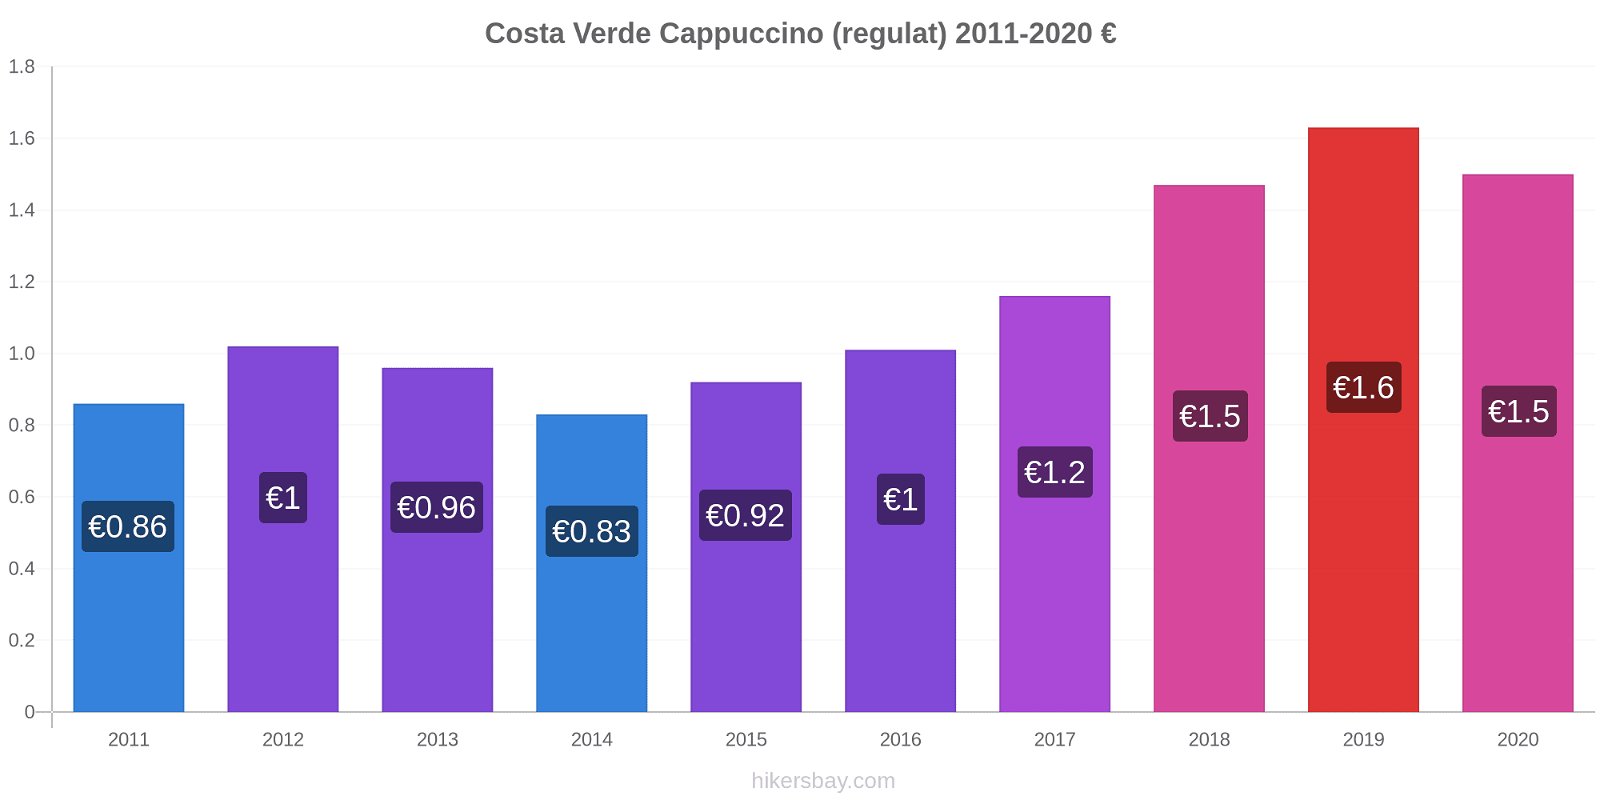 Costa Verde modificări de preț Cappuccino (regulat) hikersbay.com